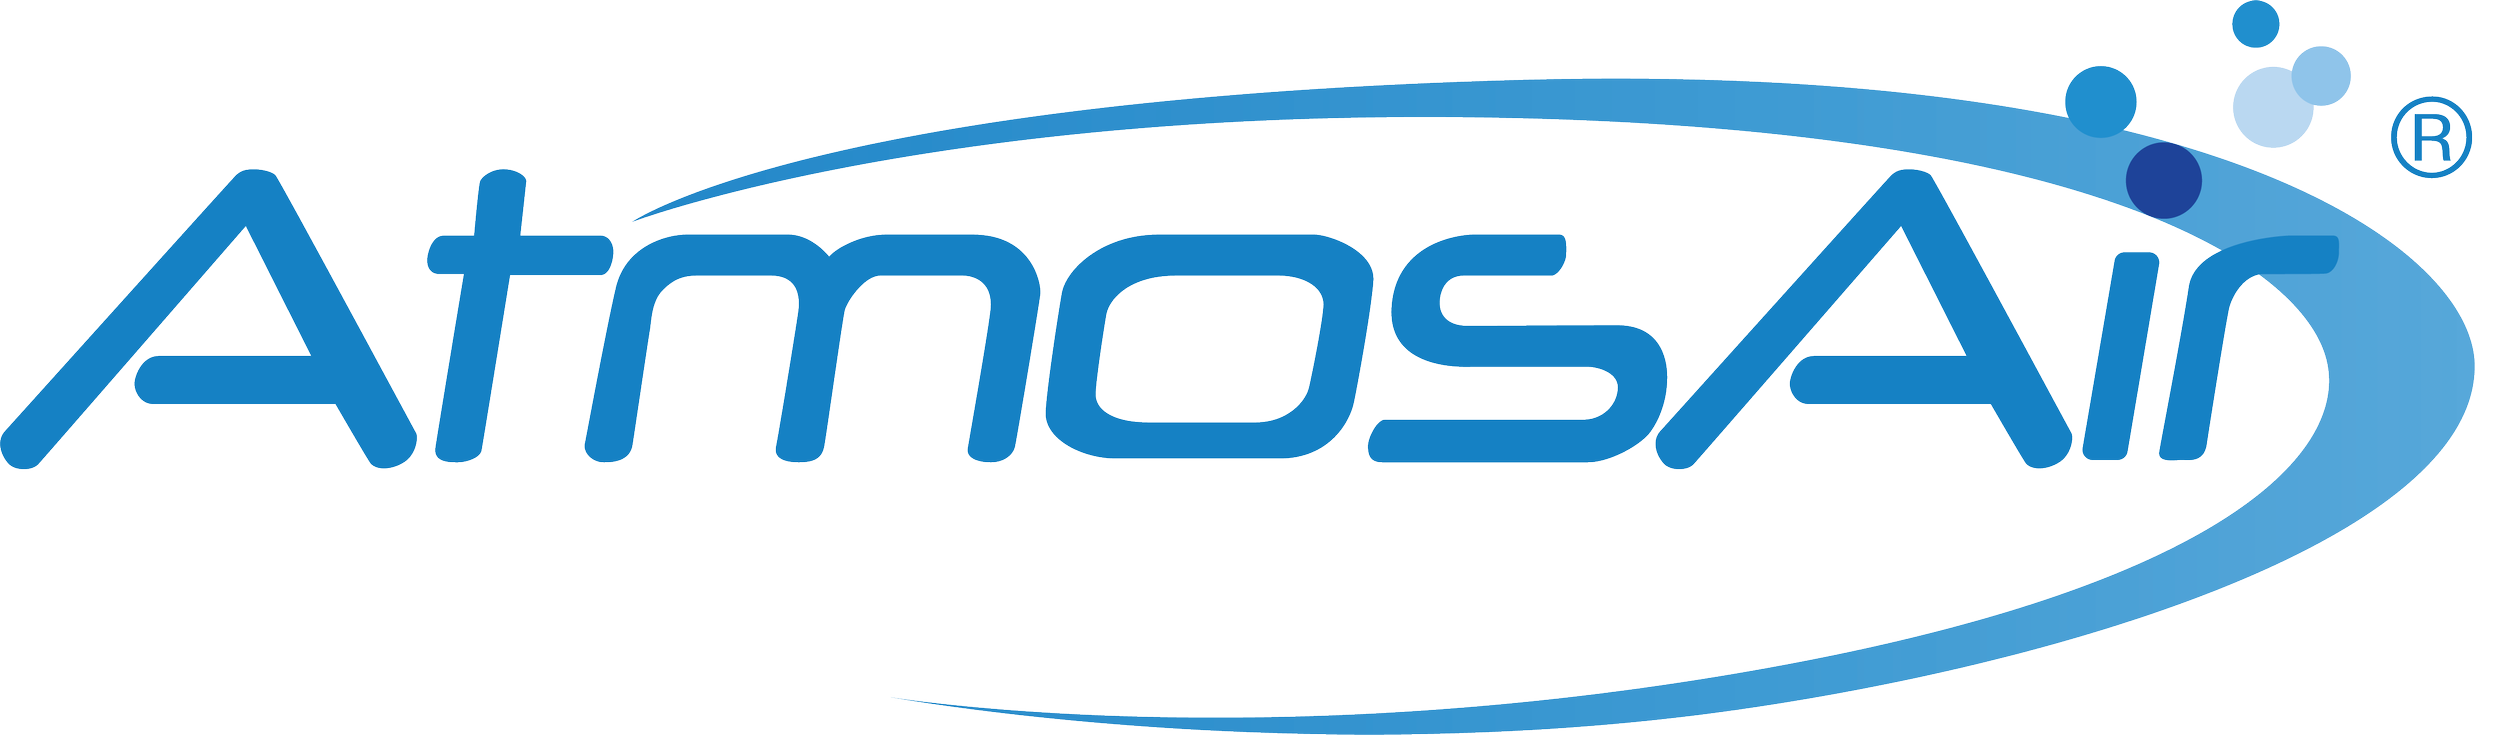 Atmos Air Logo - No background.png